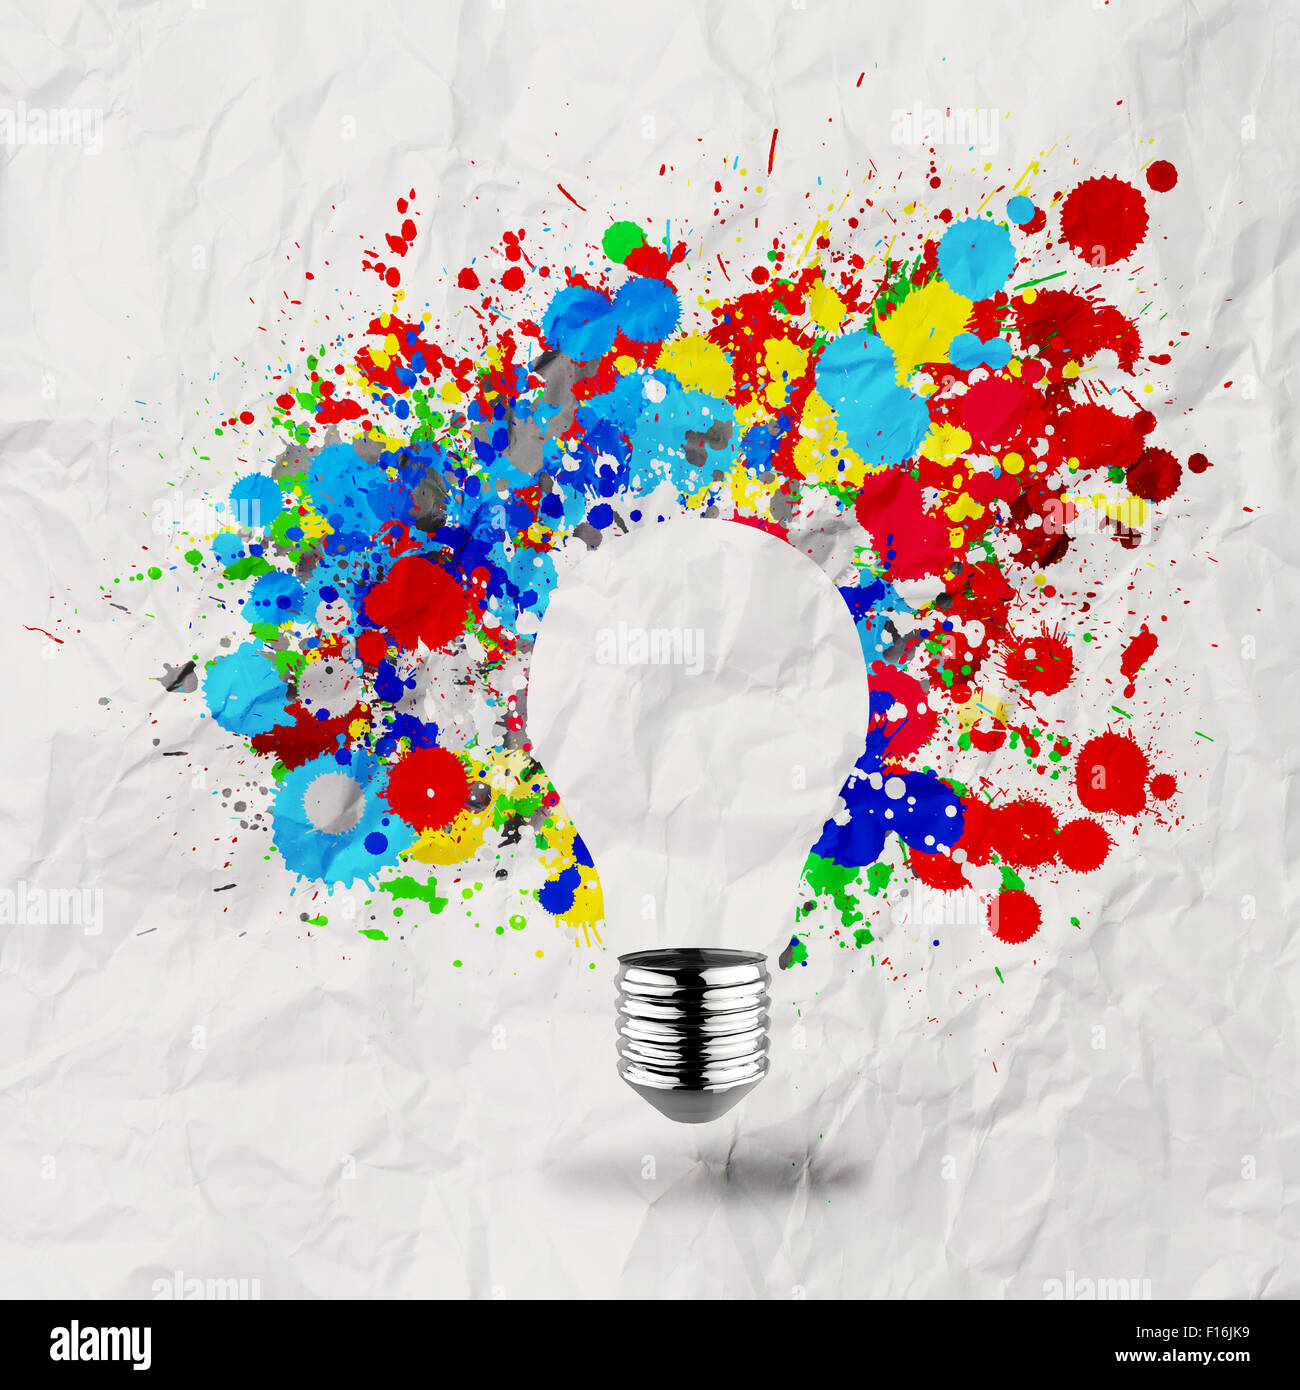 La luce invisibile lampadina e splash di colori su carta sgualcita come concetto creativo Foto Stock